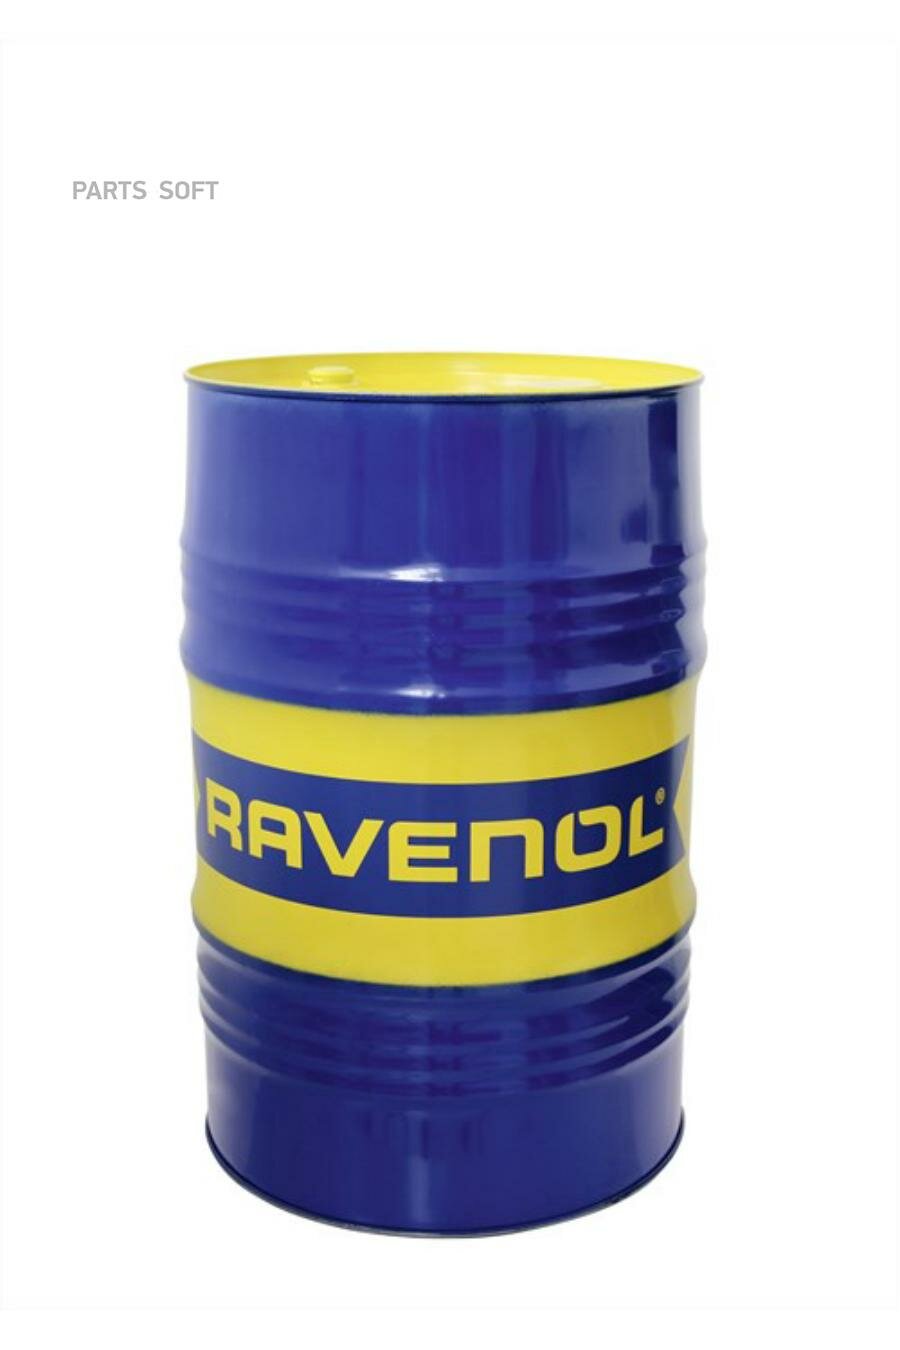 Моторное масло RAVENOL HVT High Viscosity Turbo Oil SAE 5W-50 ( 60л) new RAVENOL / арт. 111610206001999 - (1 шт)